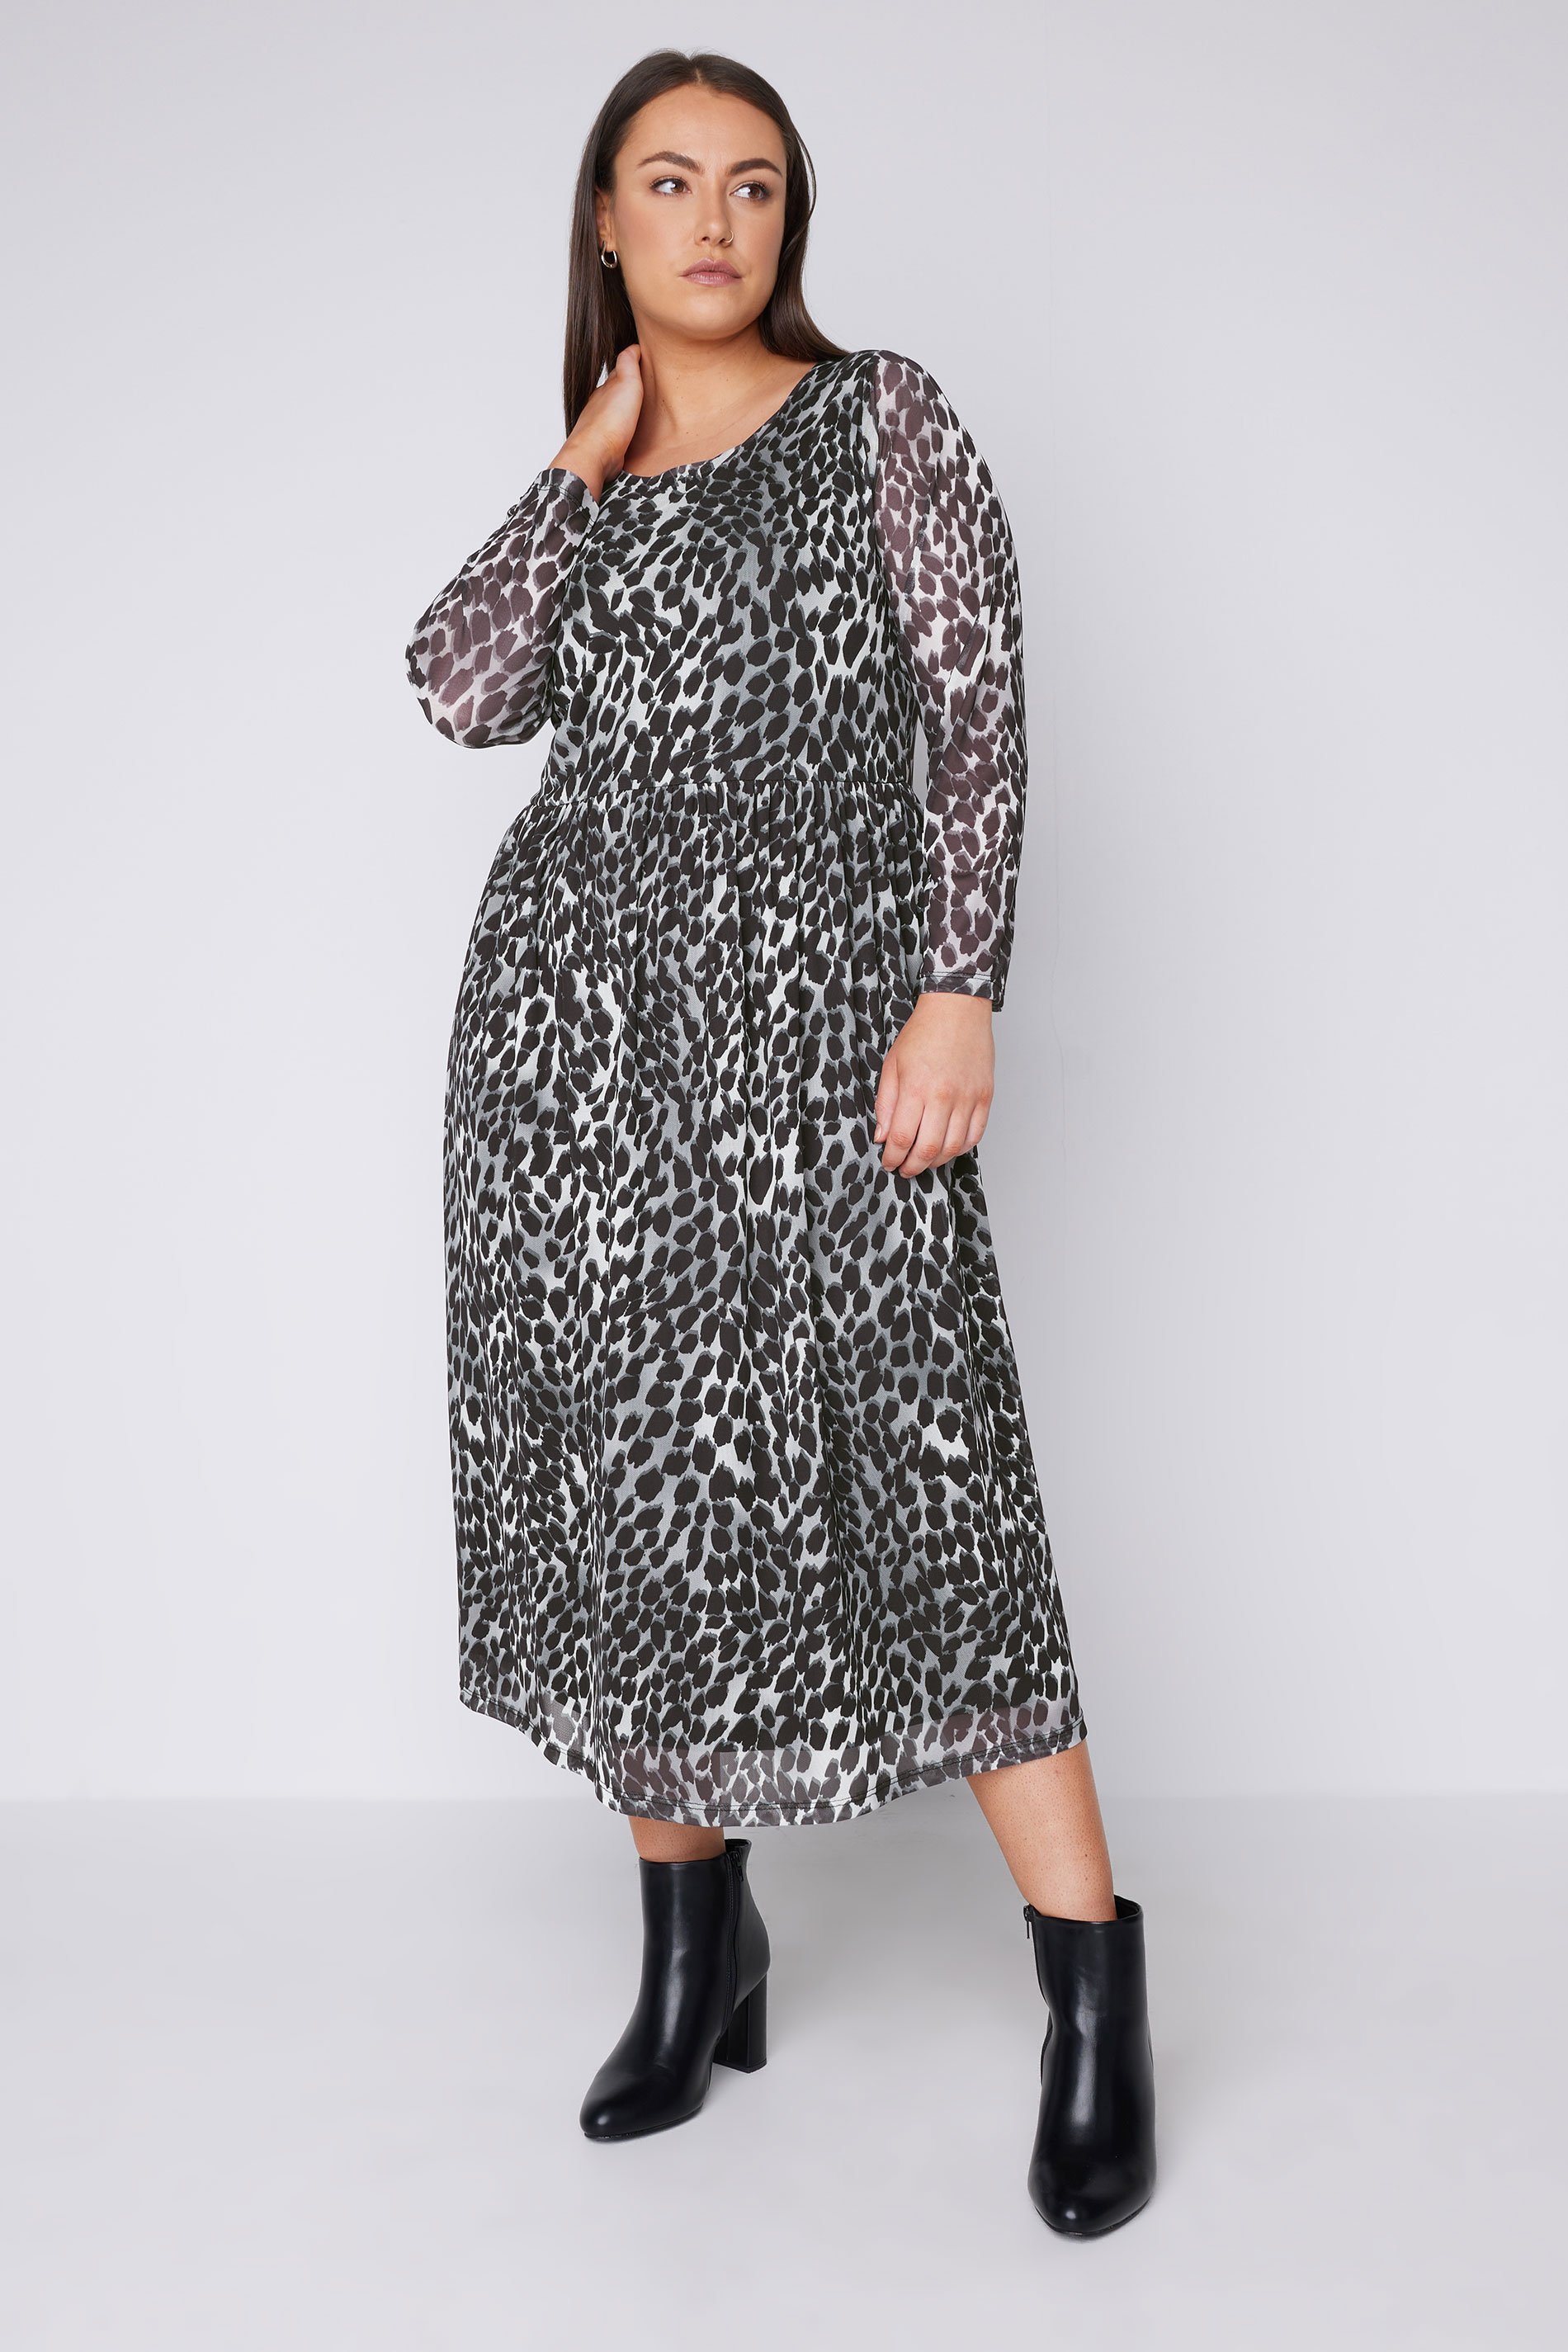 EVANS Plus Size Grey Leopard Print Mesh Midaxi Dress | Evans  2